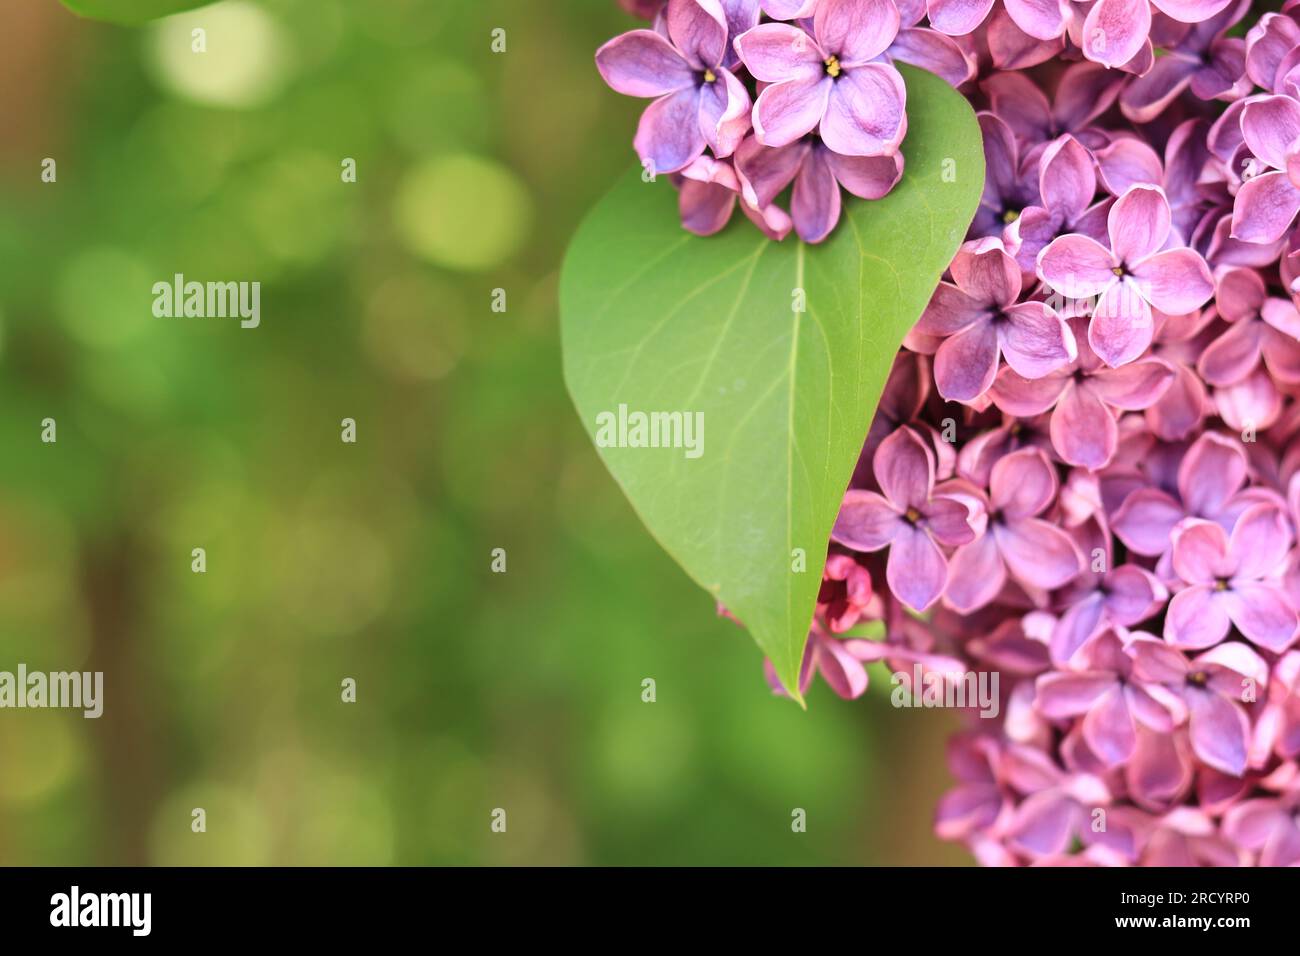 Fliederblumen schließen sich. Geblümter Hintergrund mit pinkfarbenen Fliederblumen und grünen Blättern. Eine Fülle Fliederblumen für ein romantisches Blumenbanner Stockfoto